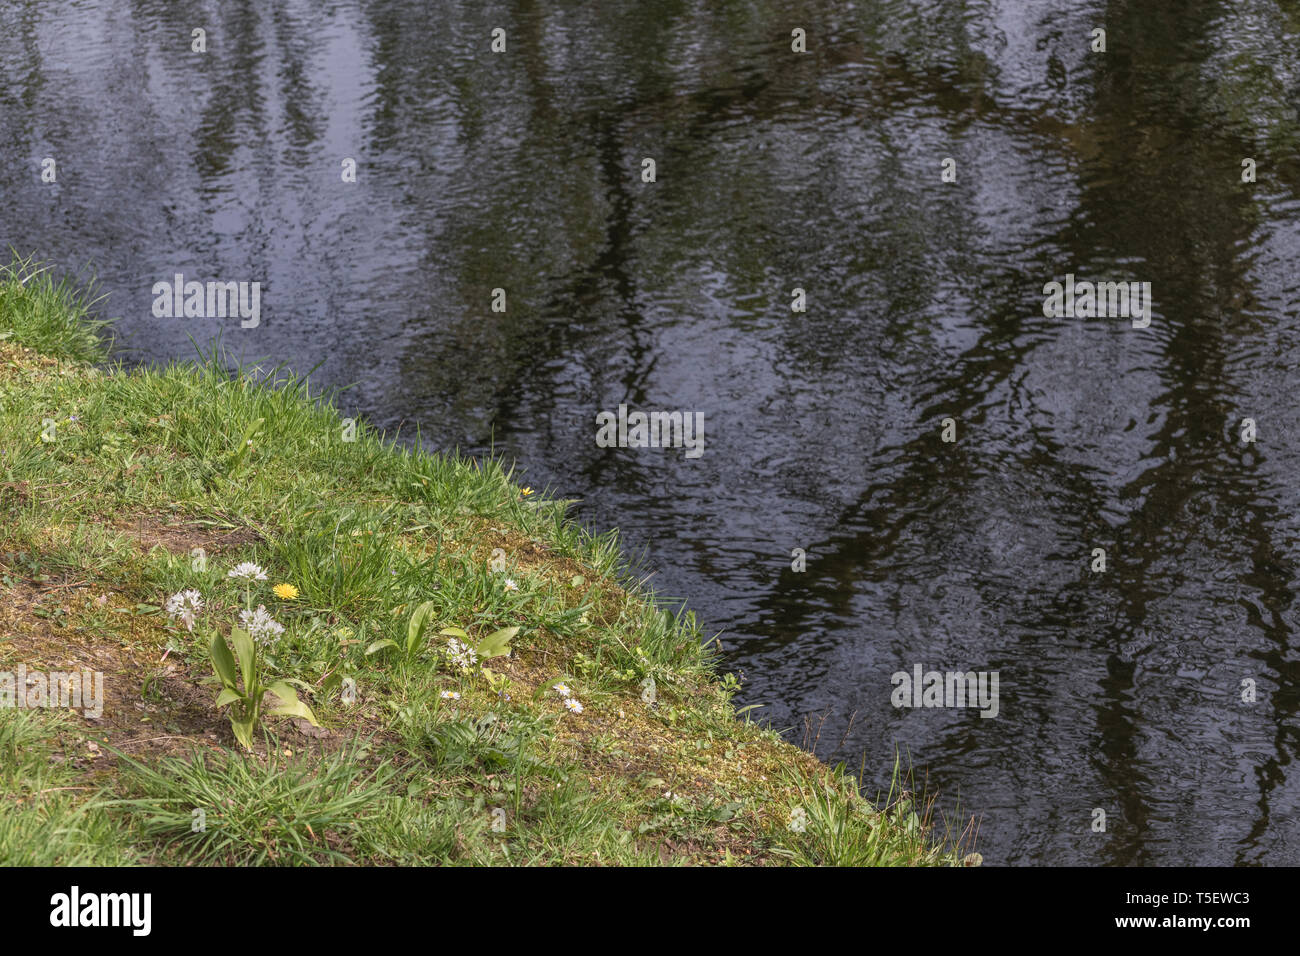 L'ail des ours Allium ursinum / Ramsons et solitaire / Pissenlit Taraxacum officinale culture des fleurs sur les bords de la rivière Fowey. Concept fleur de printemps. Banque D'Images